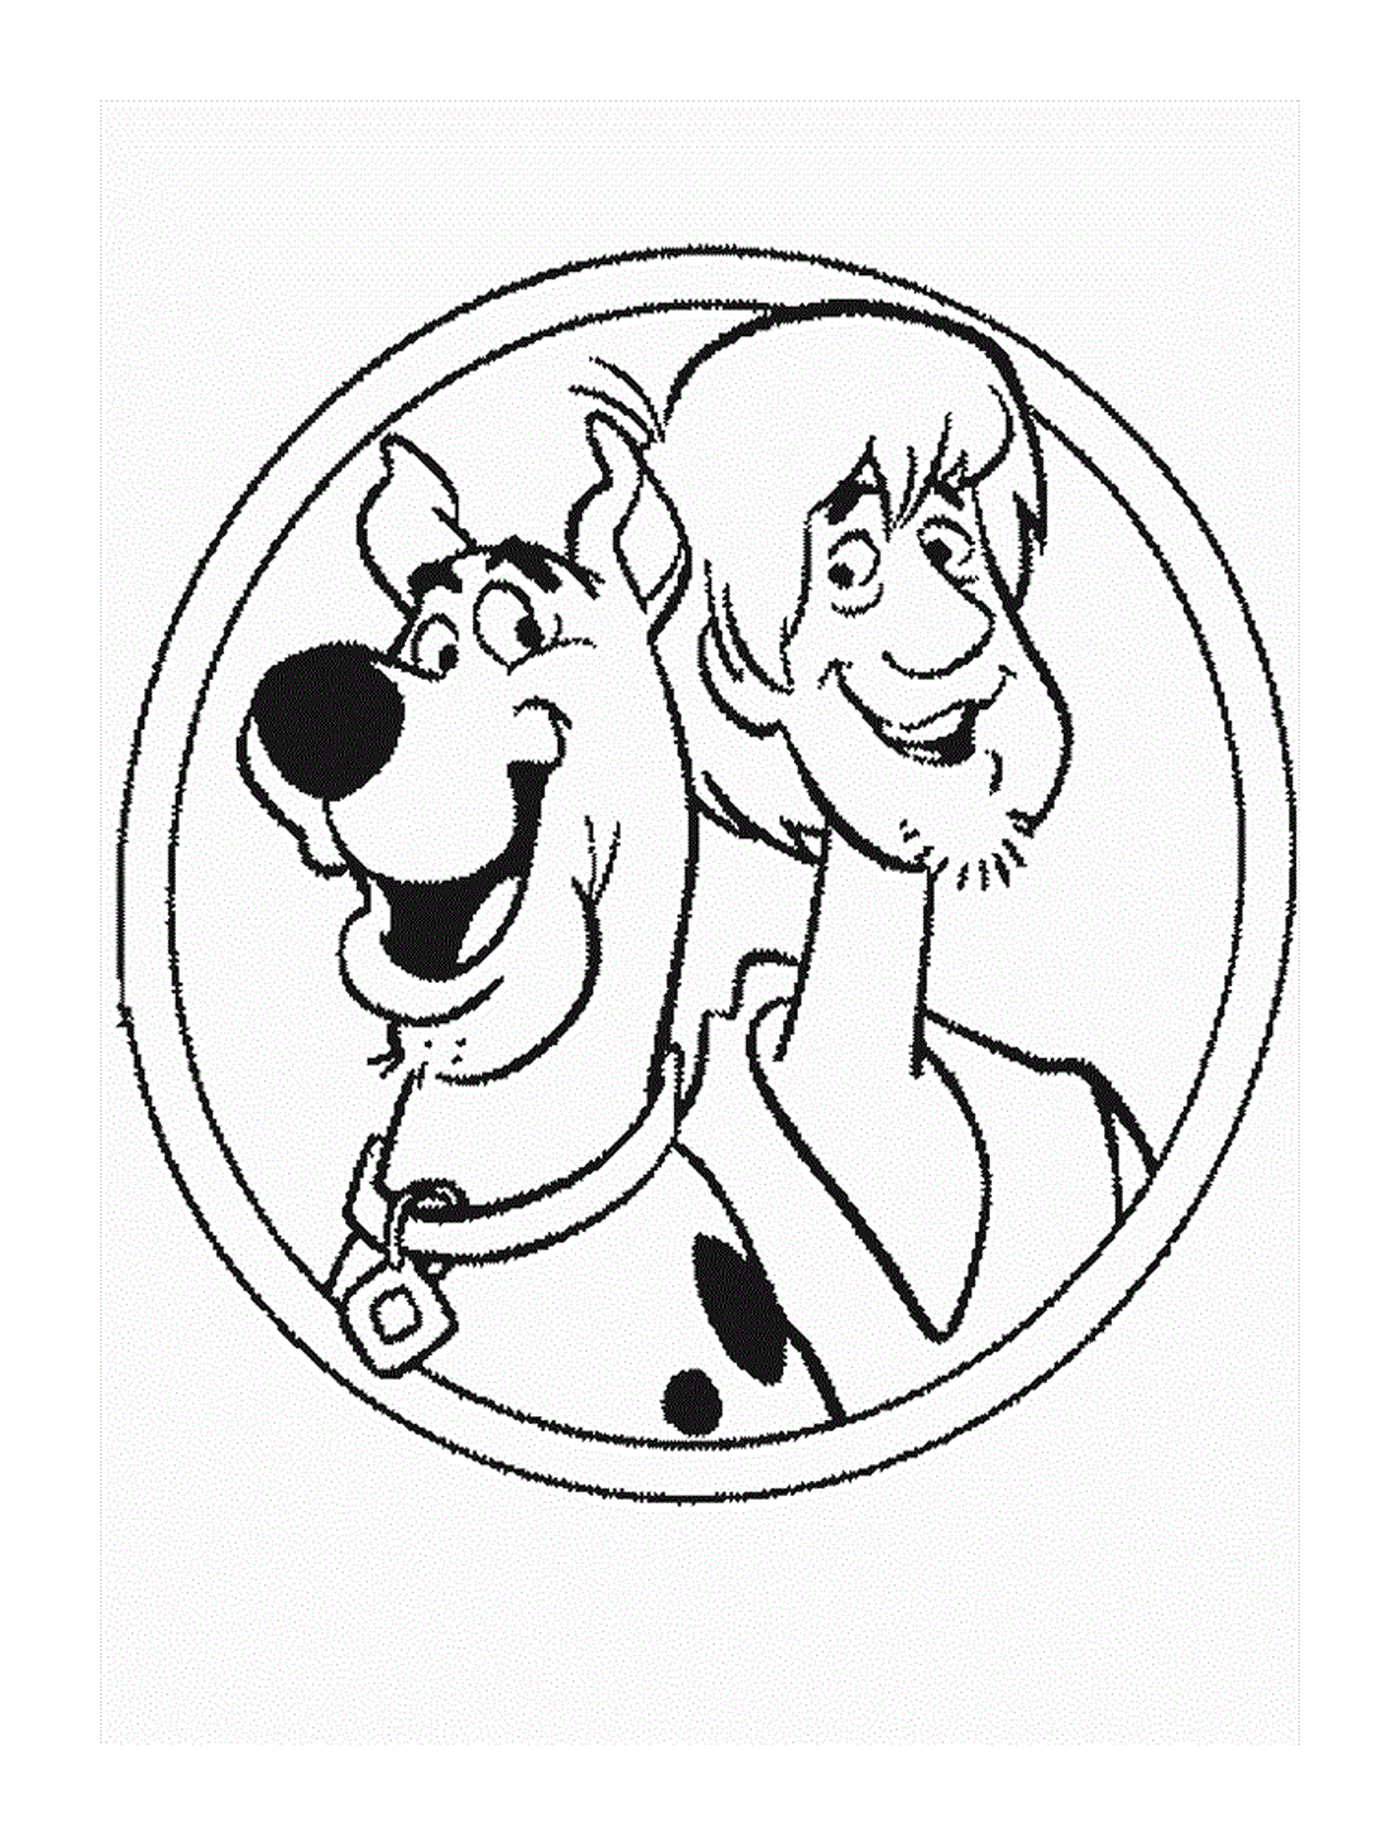   Shaggy et Scooby-Doo 